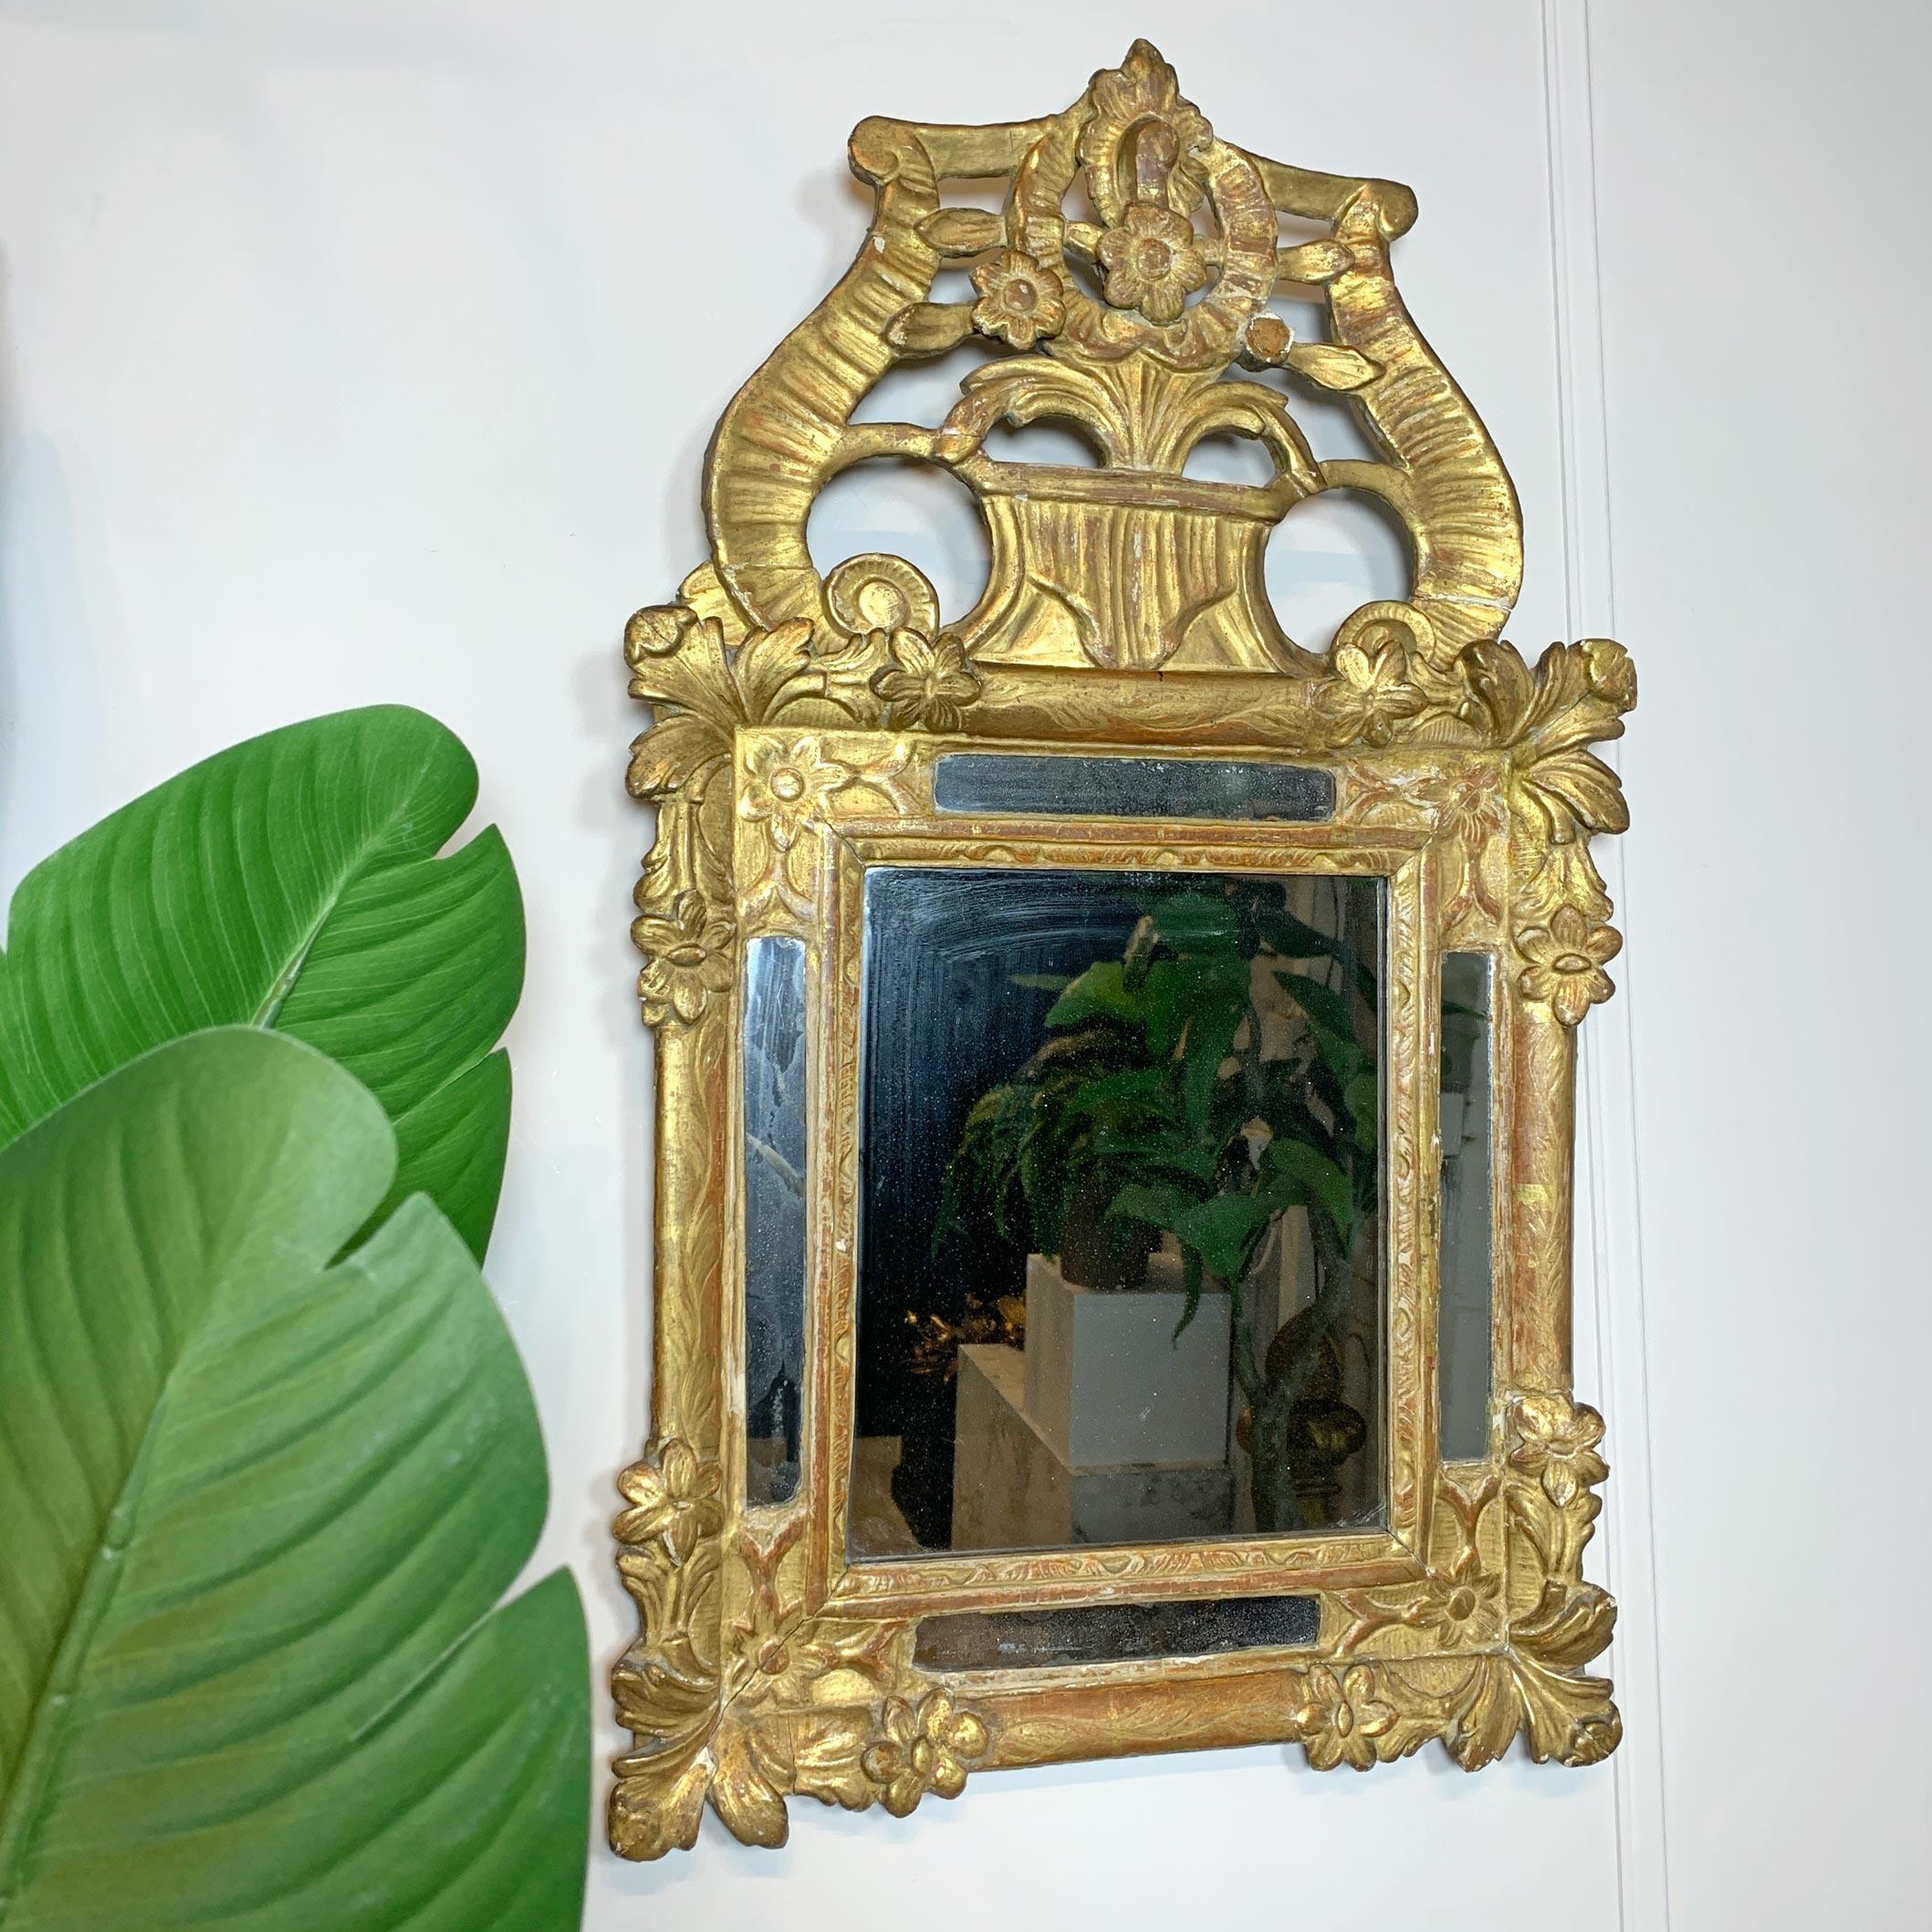 Schöne Ehe Spiegel, im Rokoko-Stil, aus dem späten 18. Jahrhundert, alle ursprünglichen Quecksilber Platte und abnehmbare dekorative Schabracke, in vergoldetem Holz und Gesso.

Geringfügige Schäden an der Schabracke und einige kleine Risse im